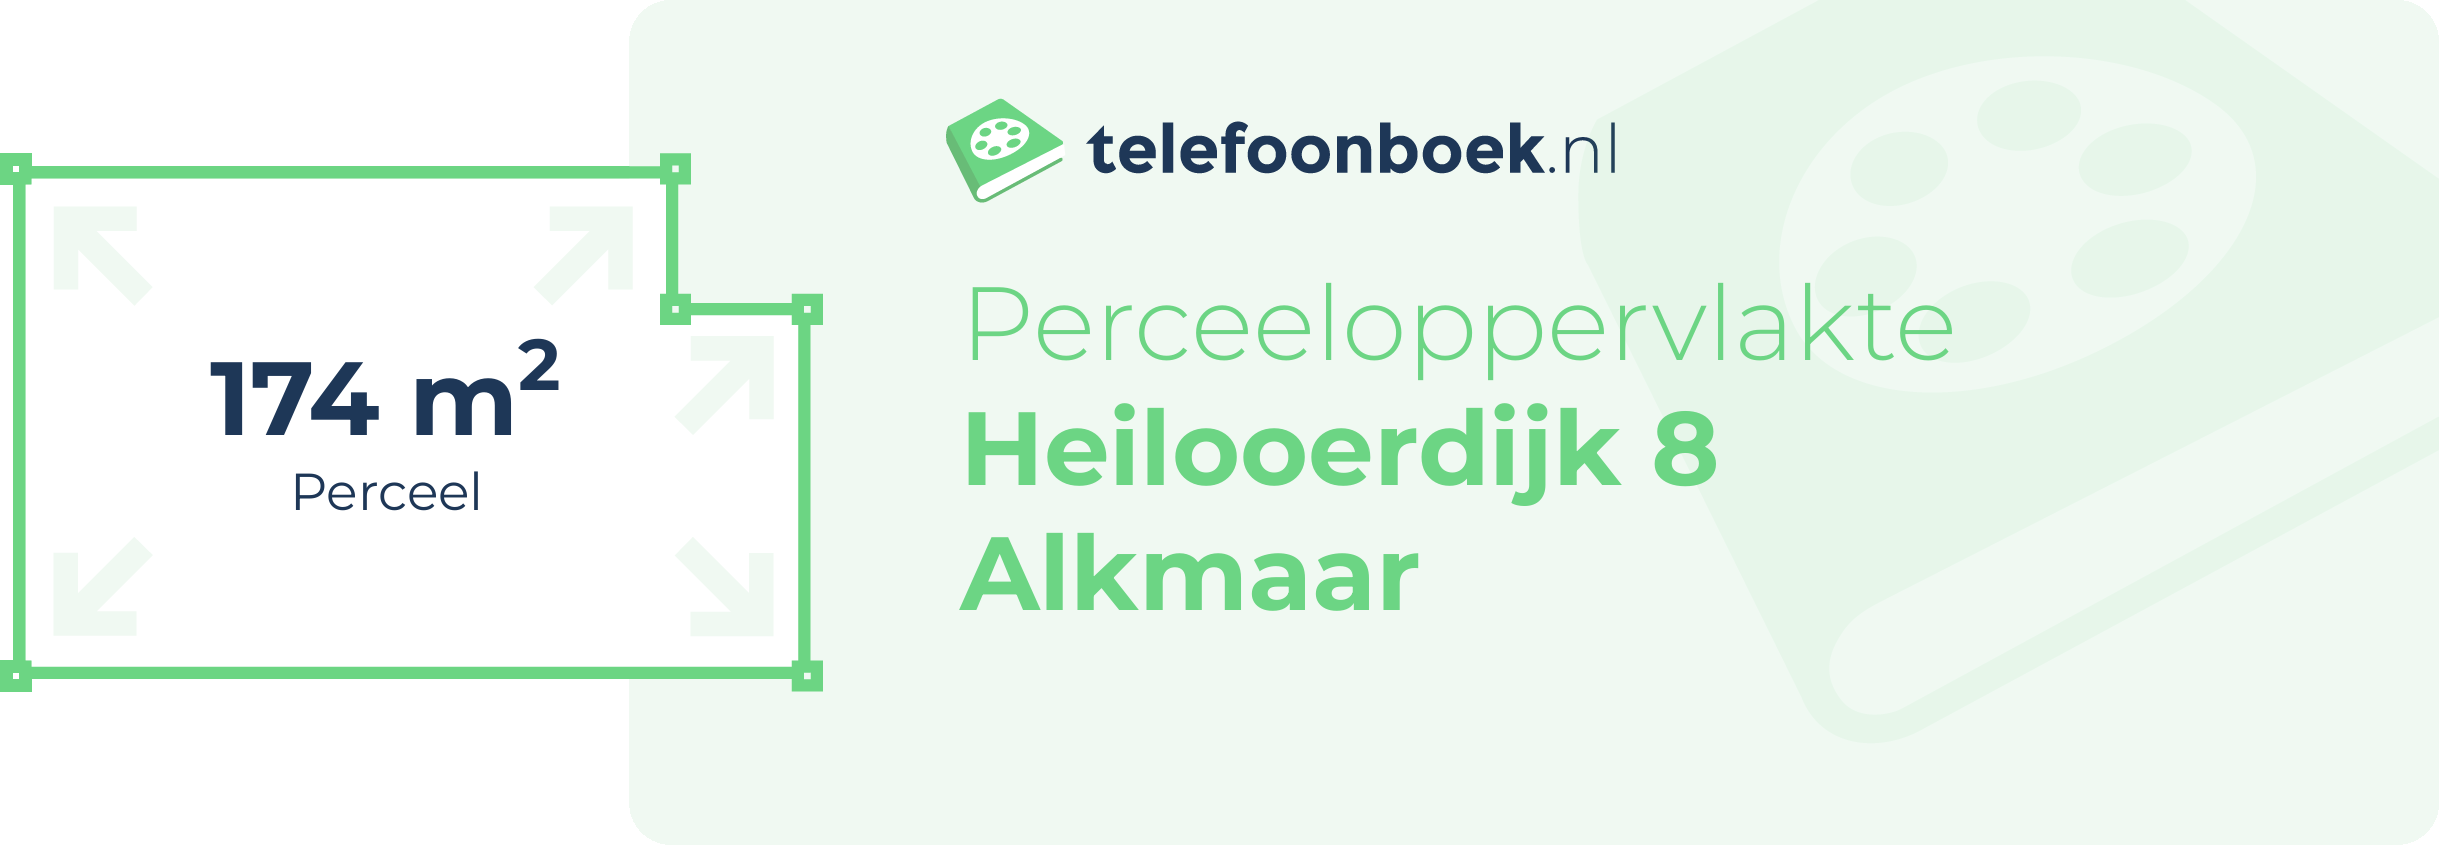 Perceeloppervlakte Heilooerdijk 8 Alkmaar